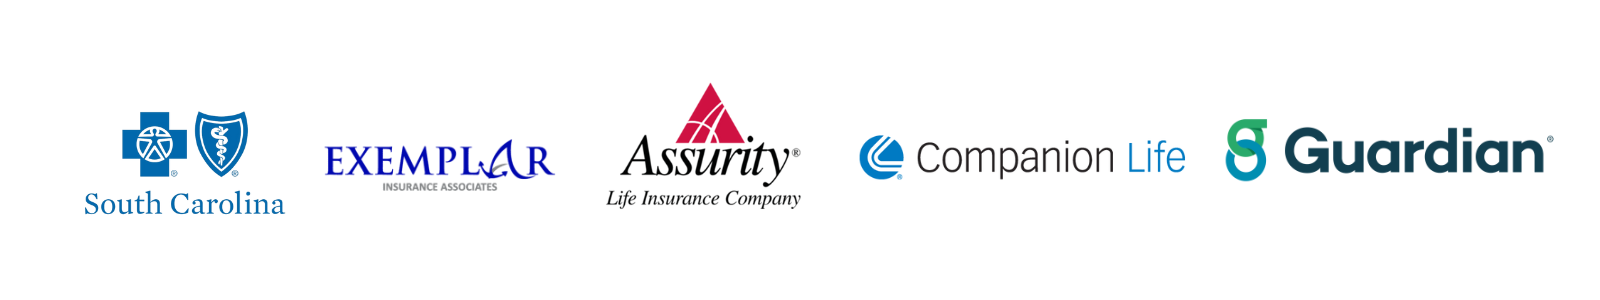 BCBS, Exemplar, Assurity, Companion Life and Guardian Insurance Logos